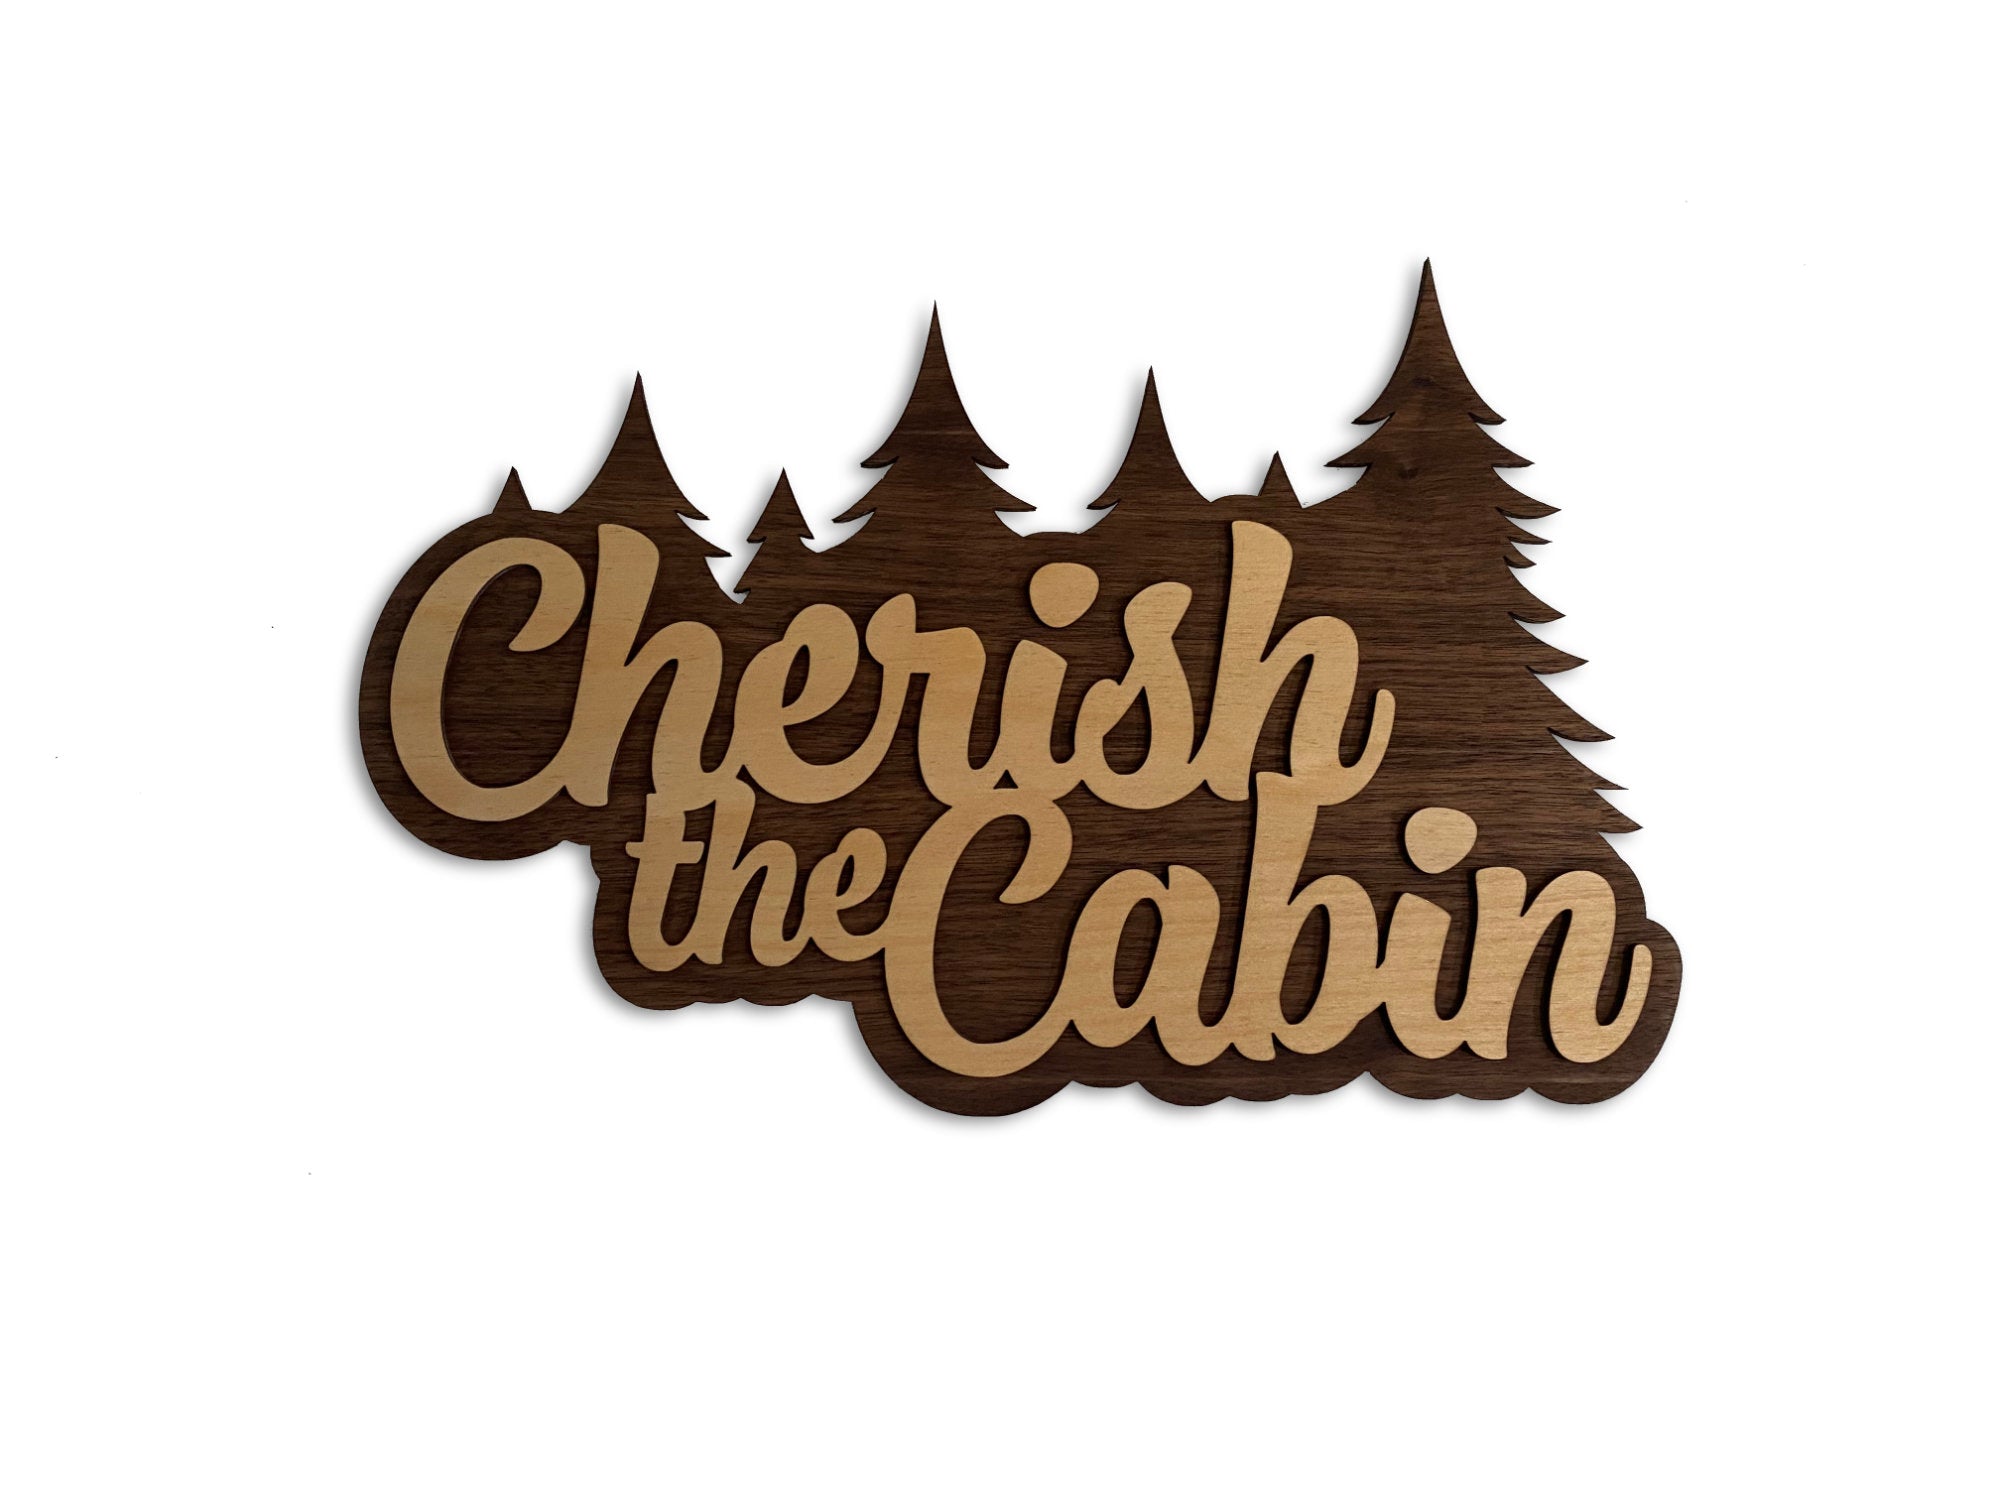 Cherish the Cabin